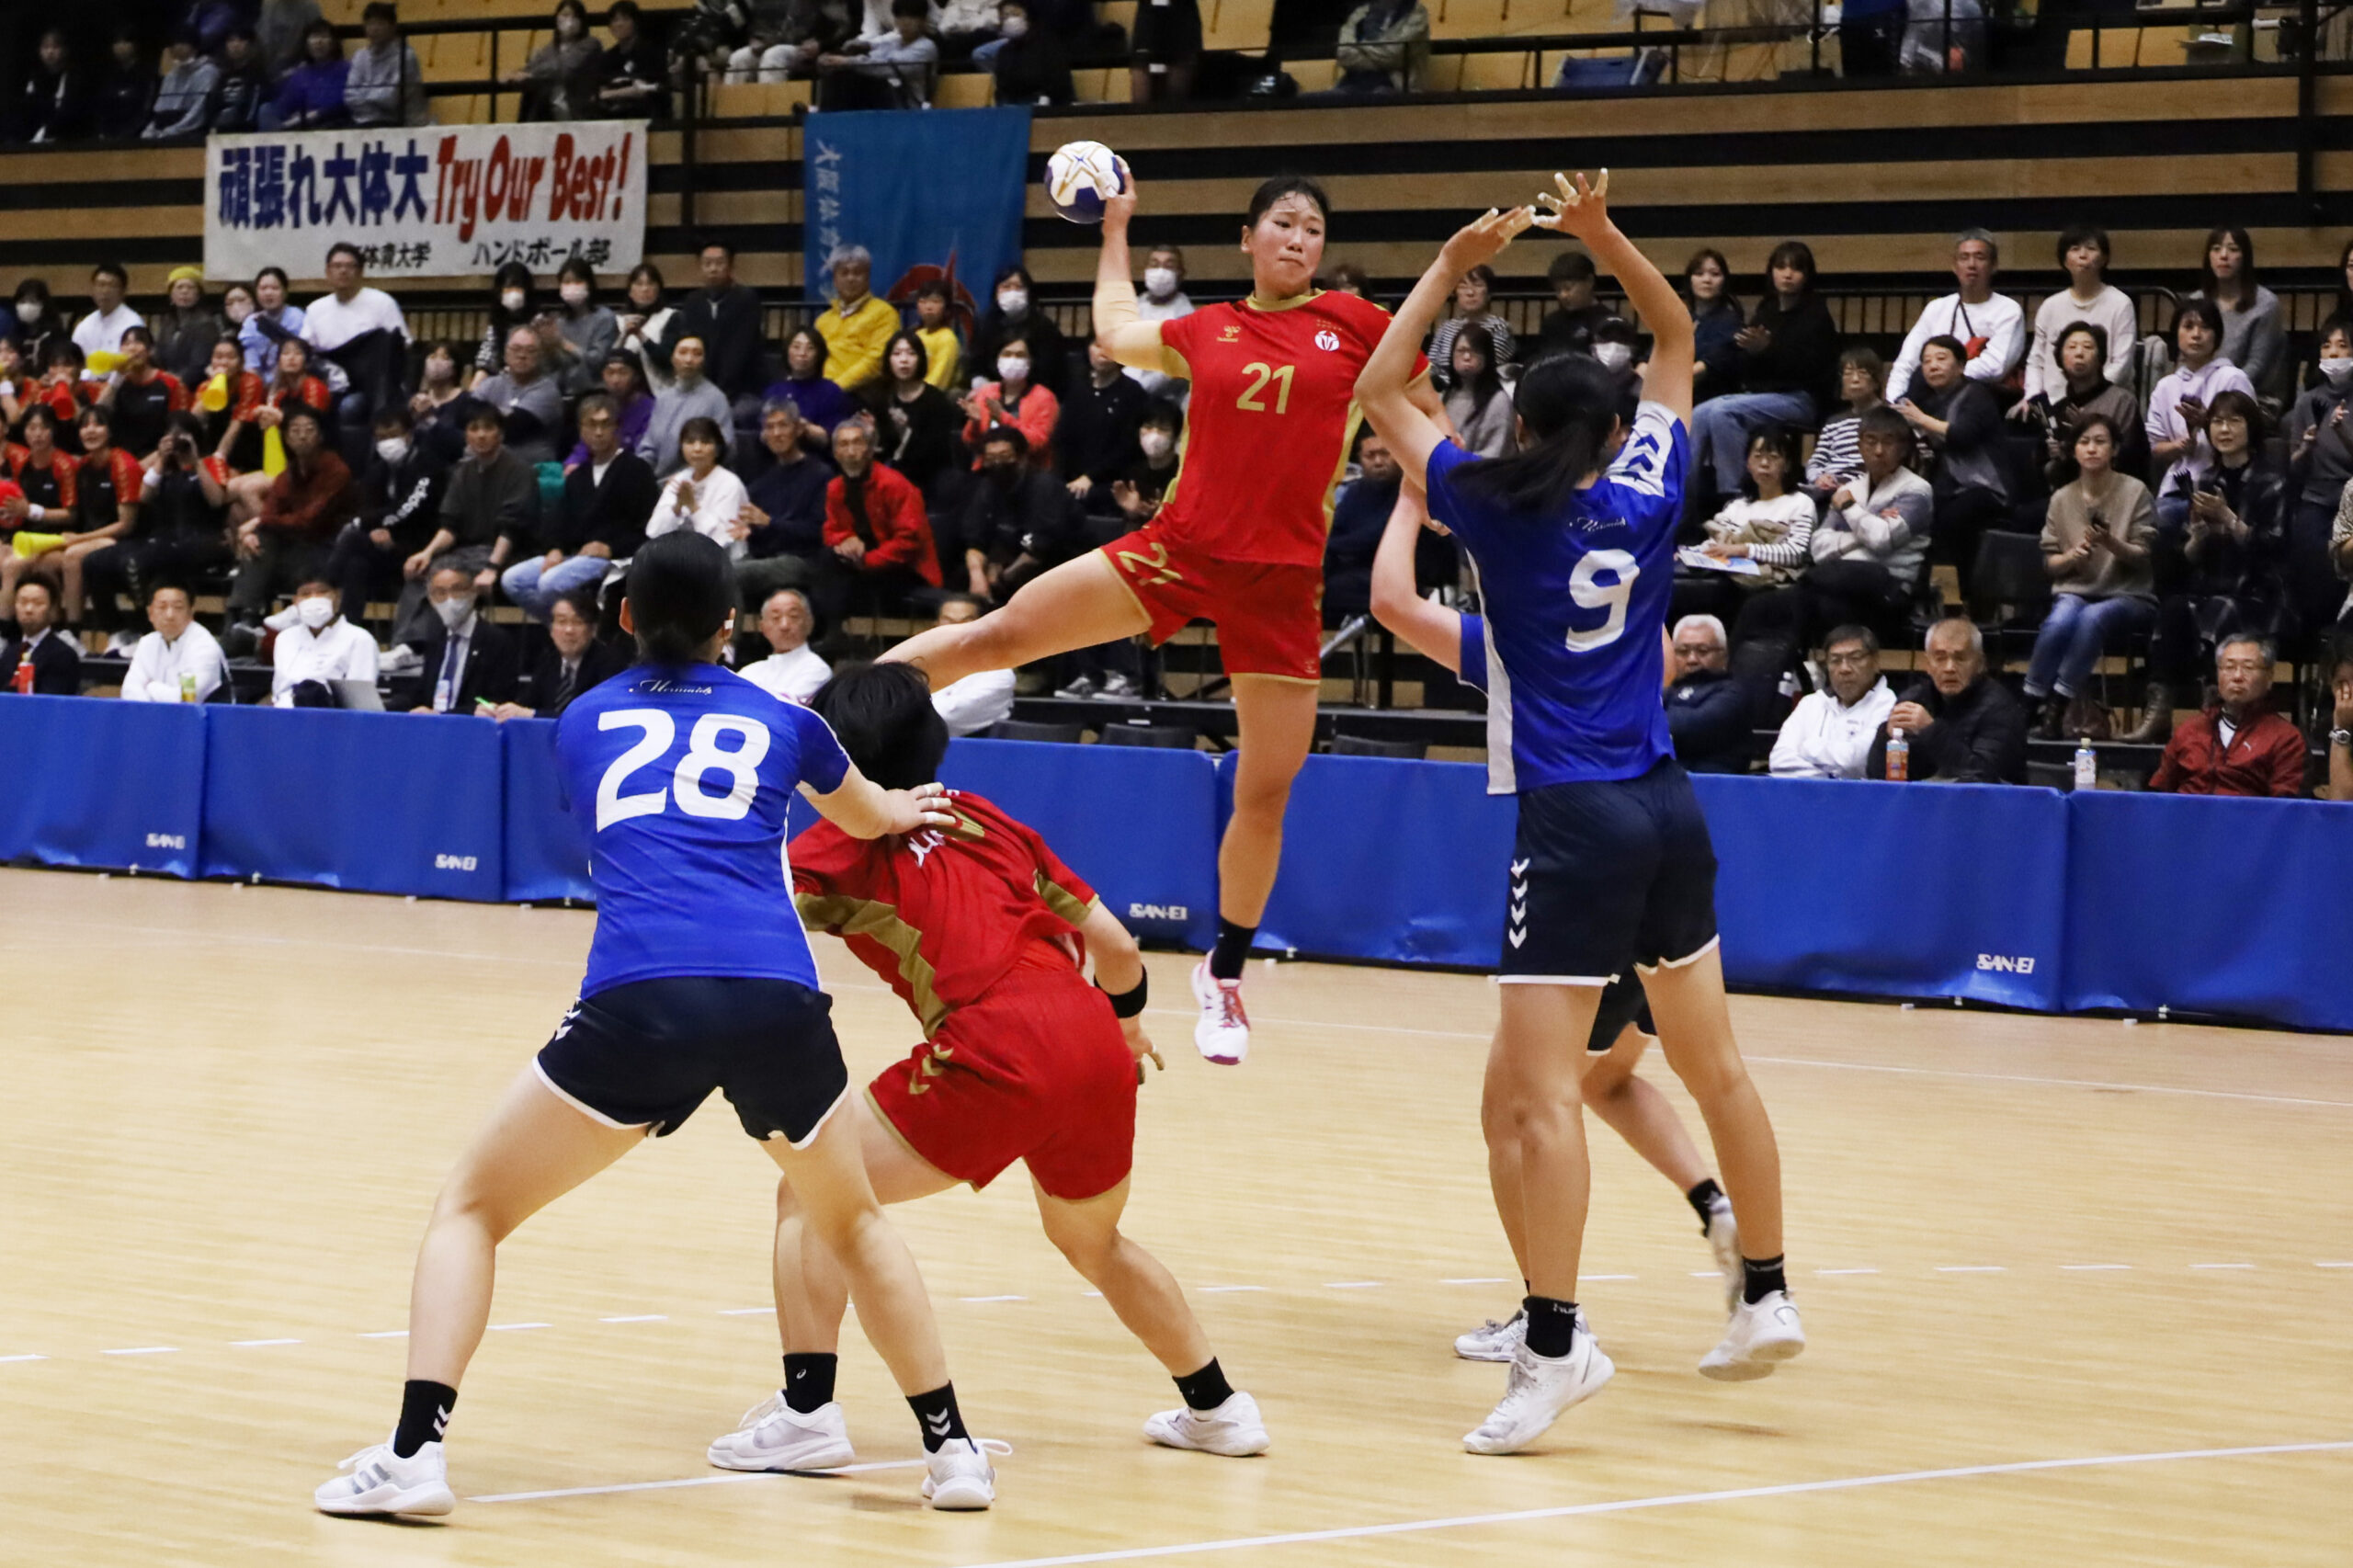 9得点を挙げた和田薫選手(体育4年)